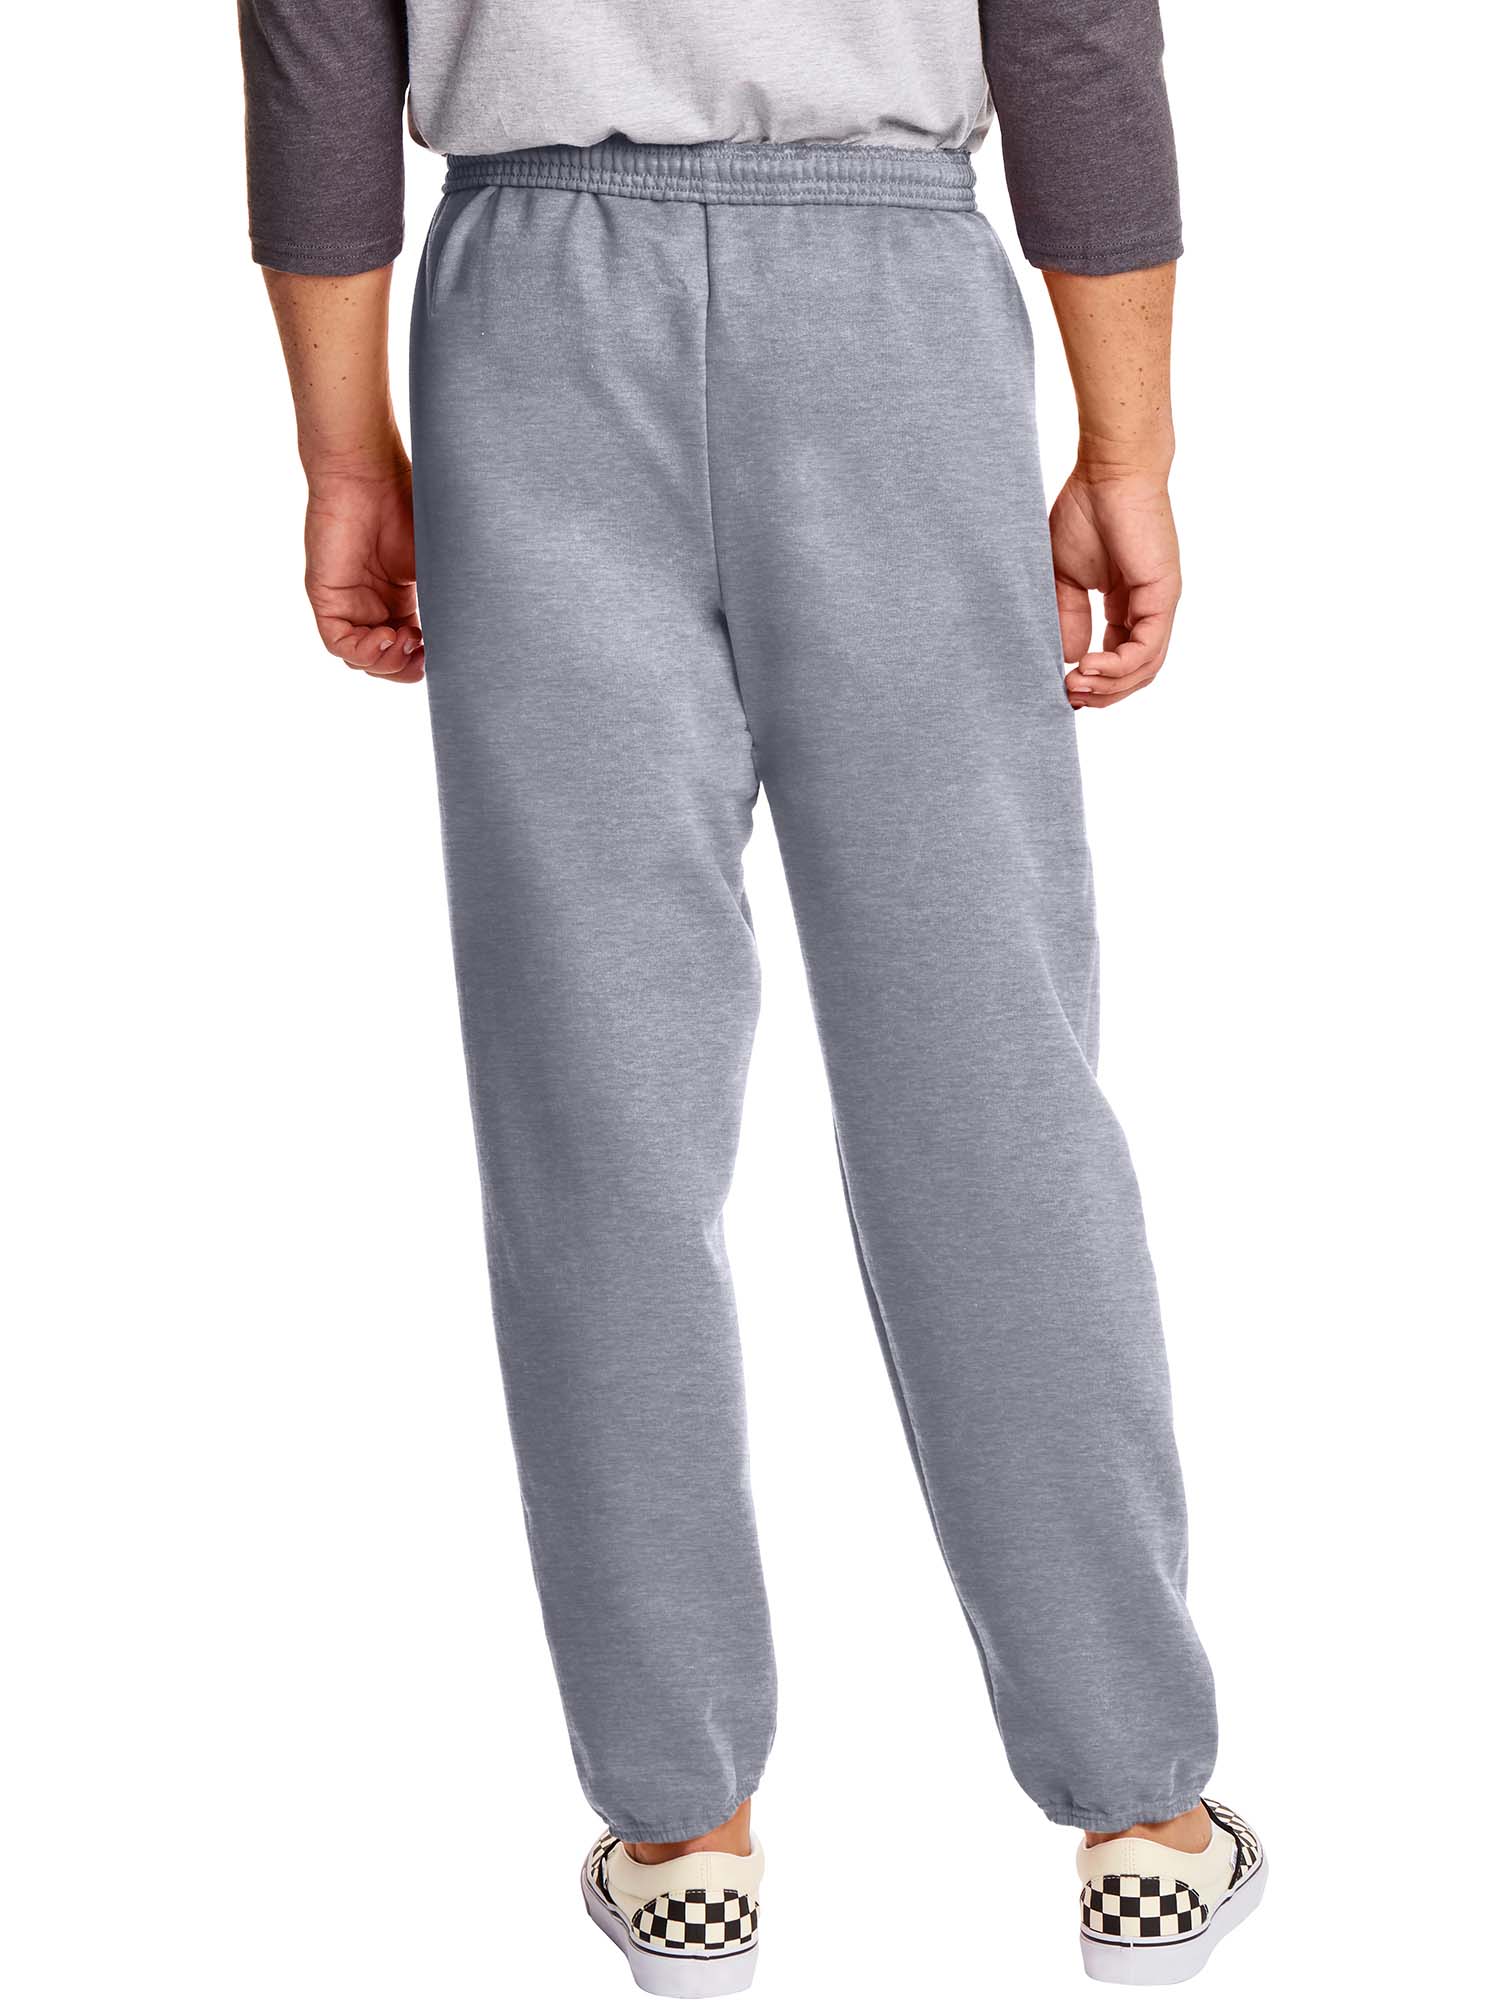 Hanes Men's and Big Men's EcoSmart Fleece Sweatpants, Sizes S-3XL - image 2 of 7